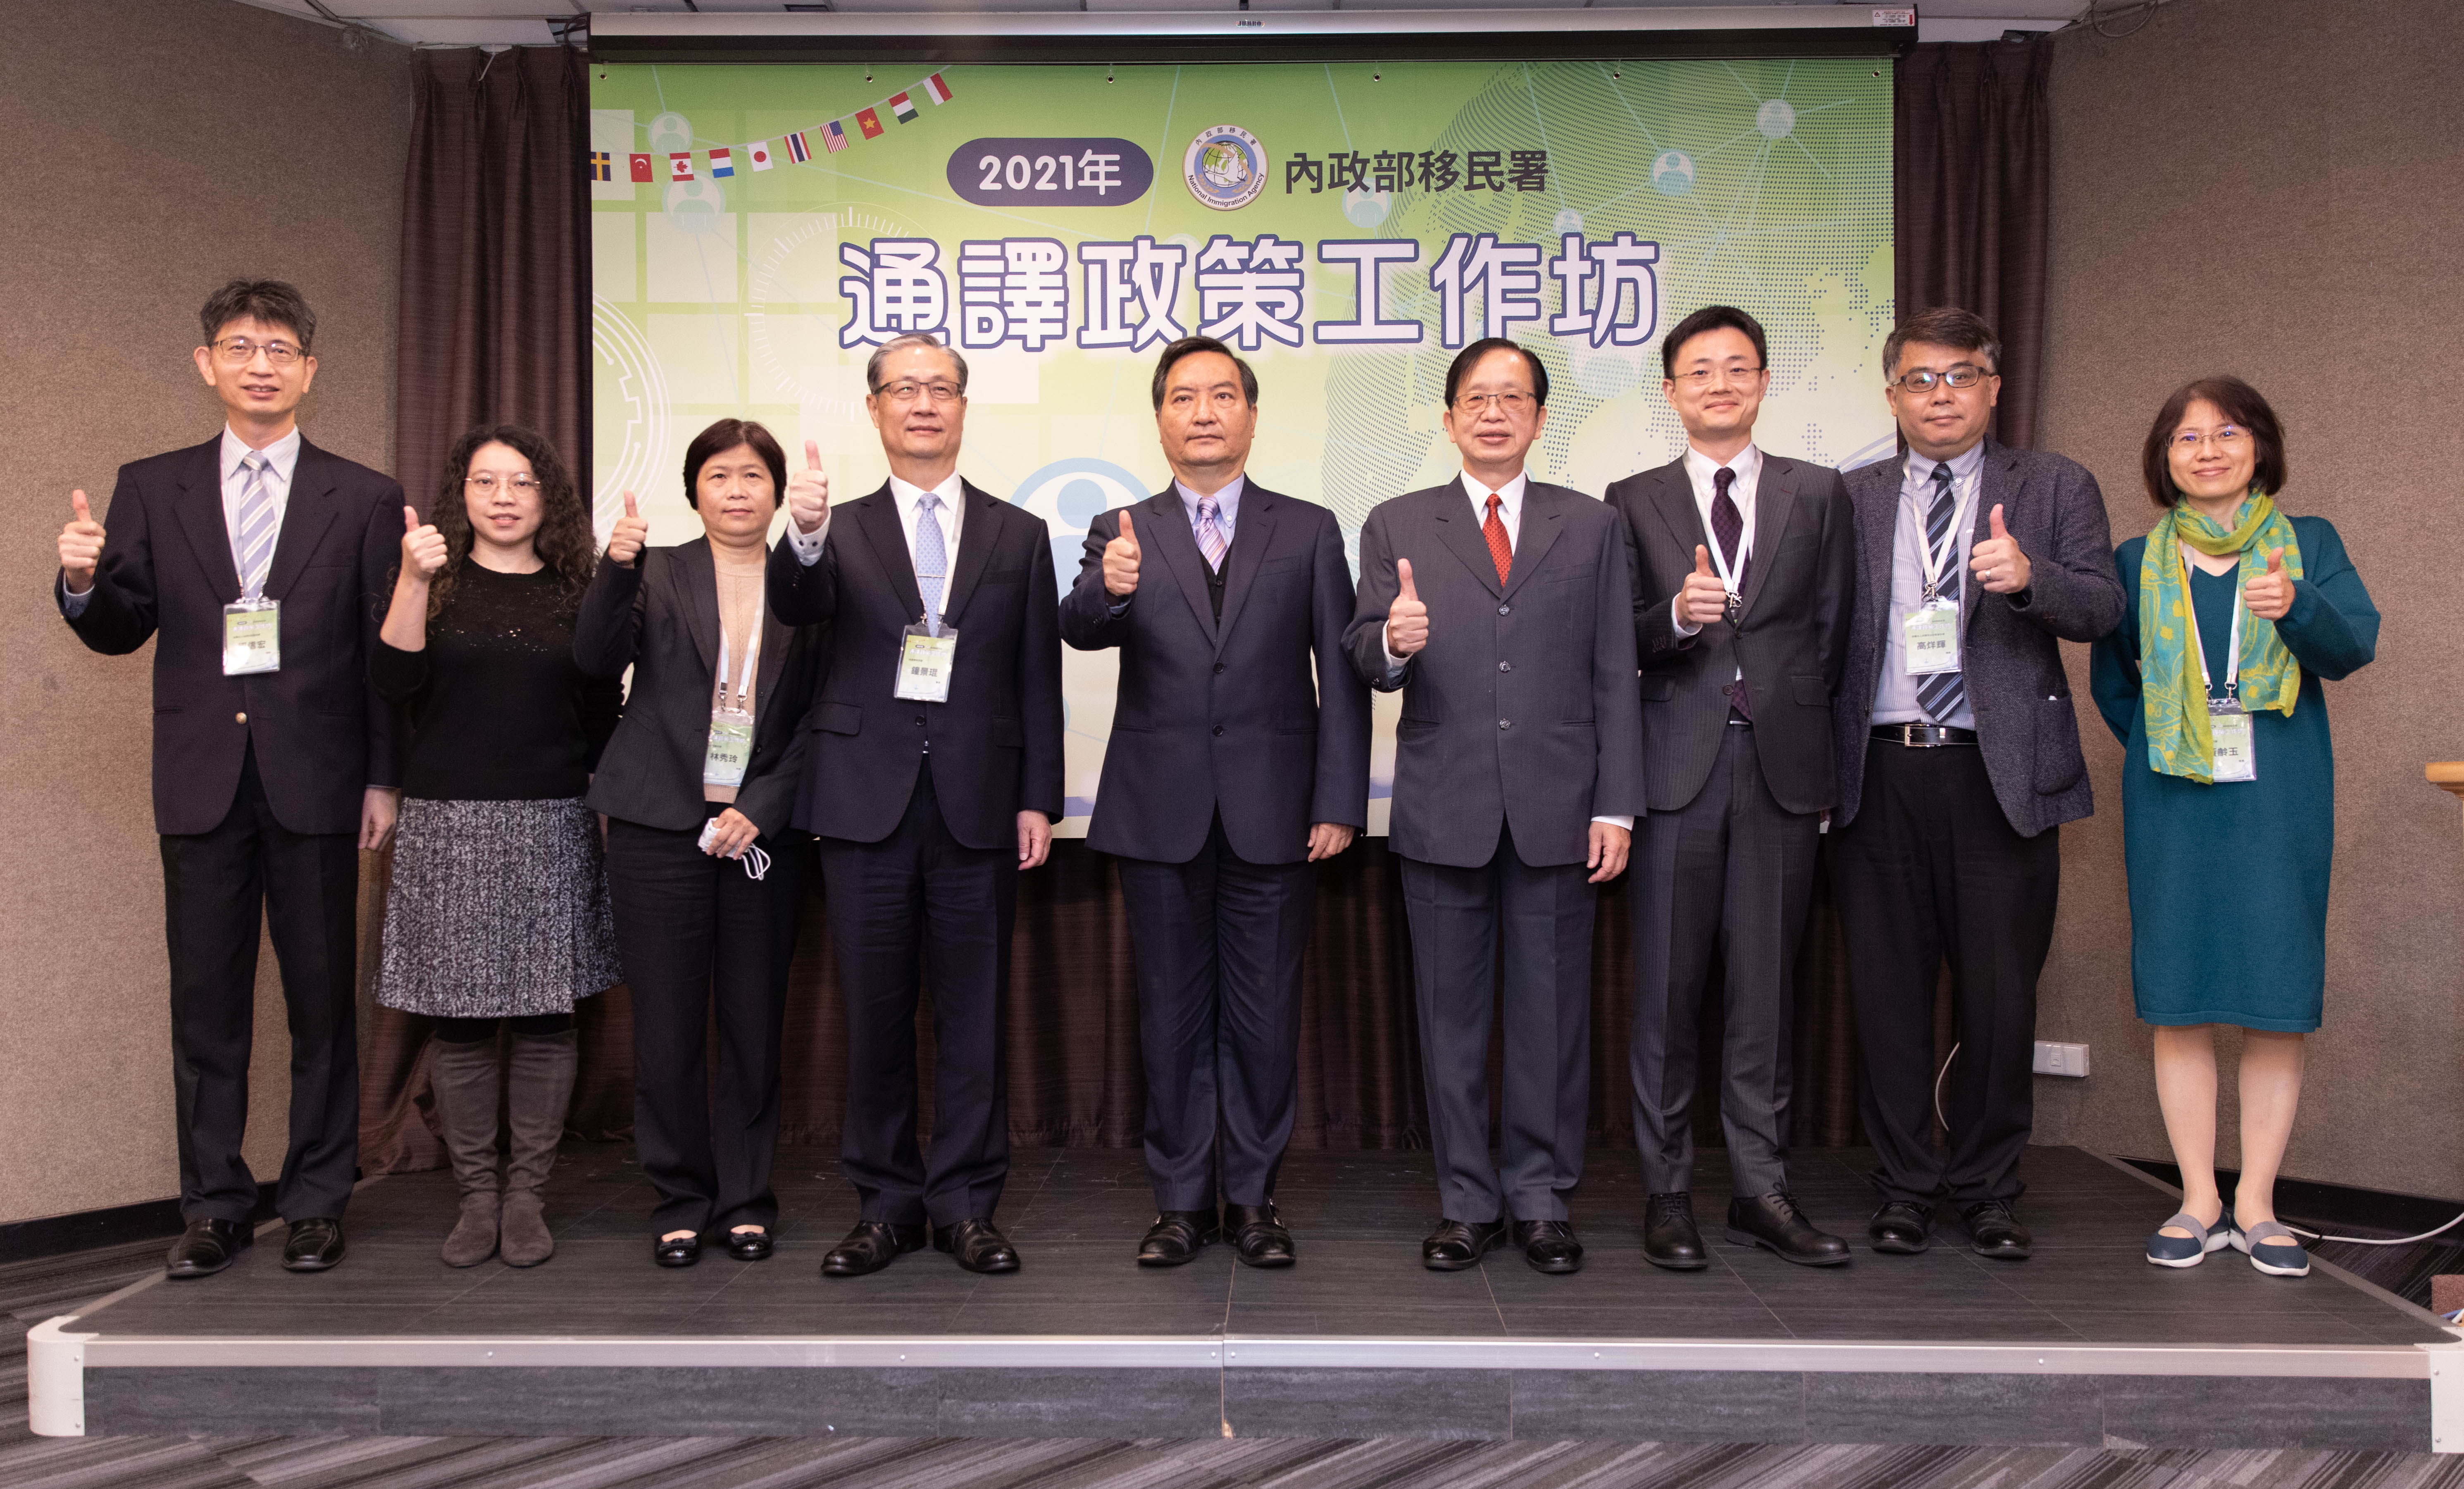 Direktur Agensi Imigrasi Nasional, Zhong Jing-kun (keempat dari kiri), anggota komisi Yuan Eksekutif, Luo Bing-cheng (tengah), dan Wakil Ketua Divisi Operasional Kementerian Dalam Negeri, Qiu Chang-yue (keempat dari kanan) berfoto bersama. Sumber: Berita Global untuk Penduduk Baru